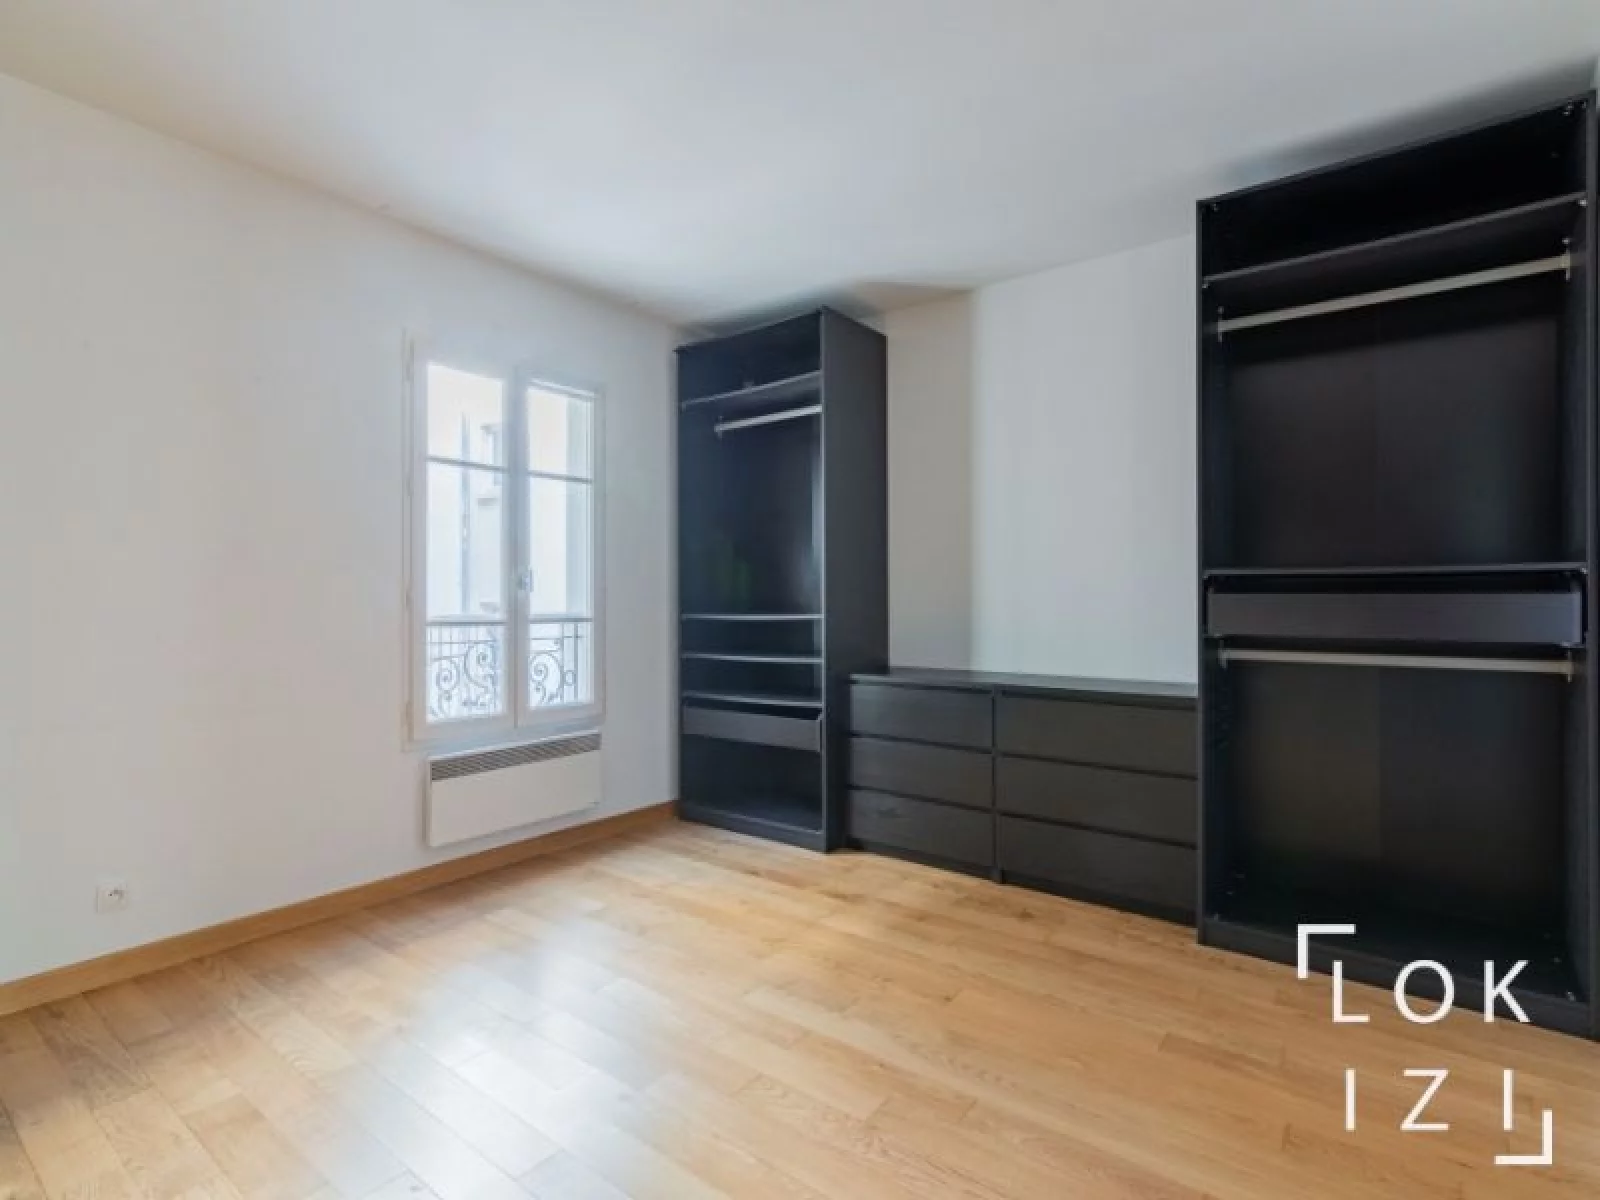 Vente appartement 2 pièces de 36m² (Paris 18 - Montmartre)